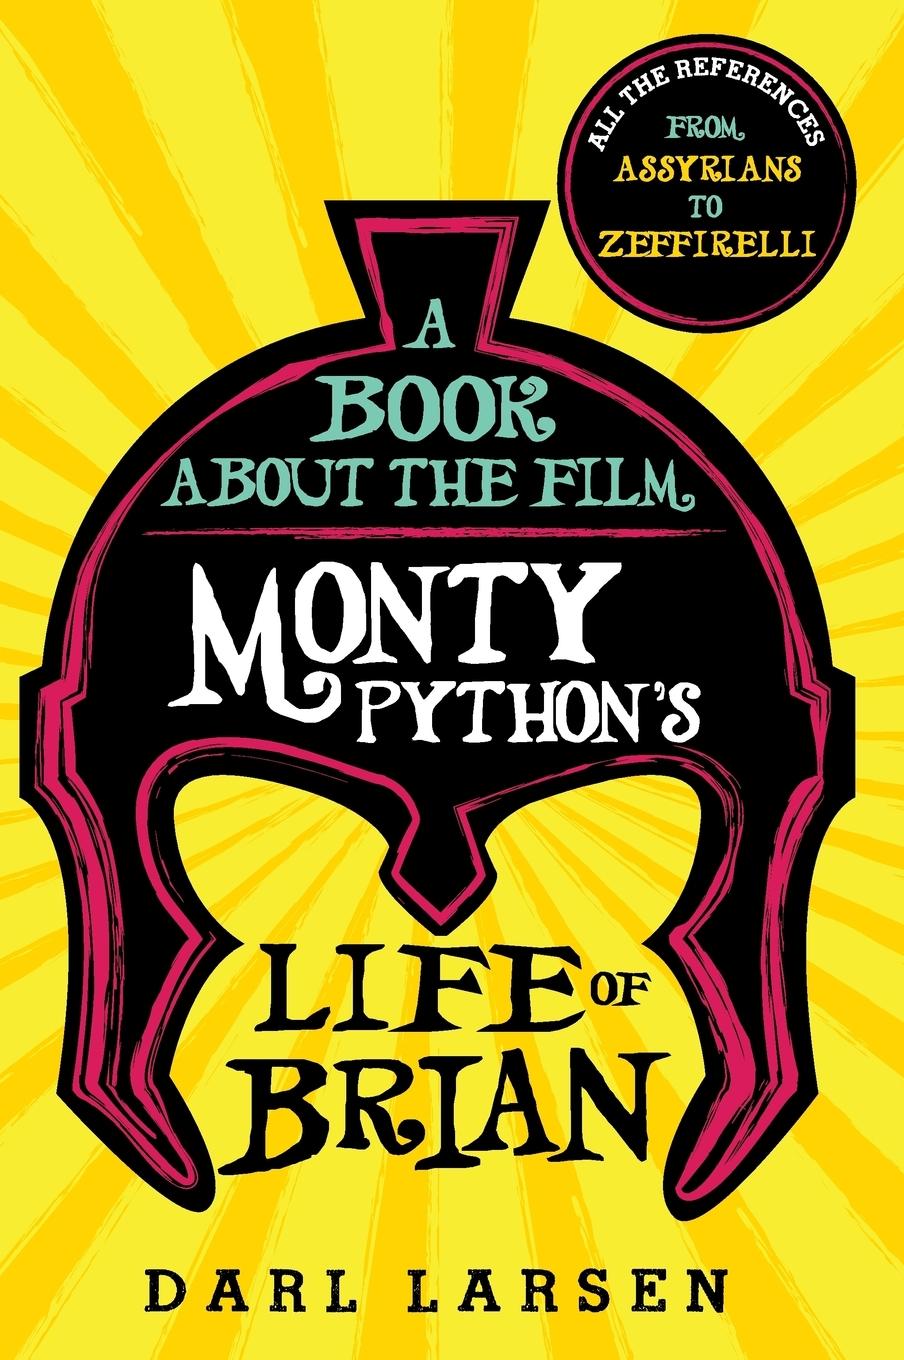 A Book about the Film Monty Python's Life of Brian / All the References from Assyrians to Zeffirelli / Darl Larsen / Buch / HC gerader Rücken kaschiert / Gebunden / Englisch / 2018 / EAN 9781538103654 - Larsen, Darl